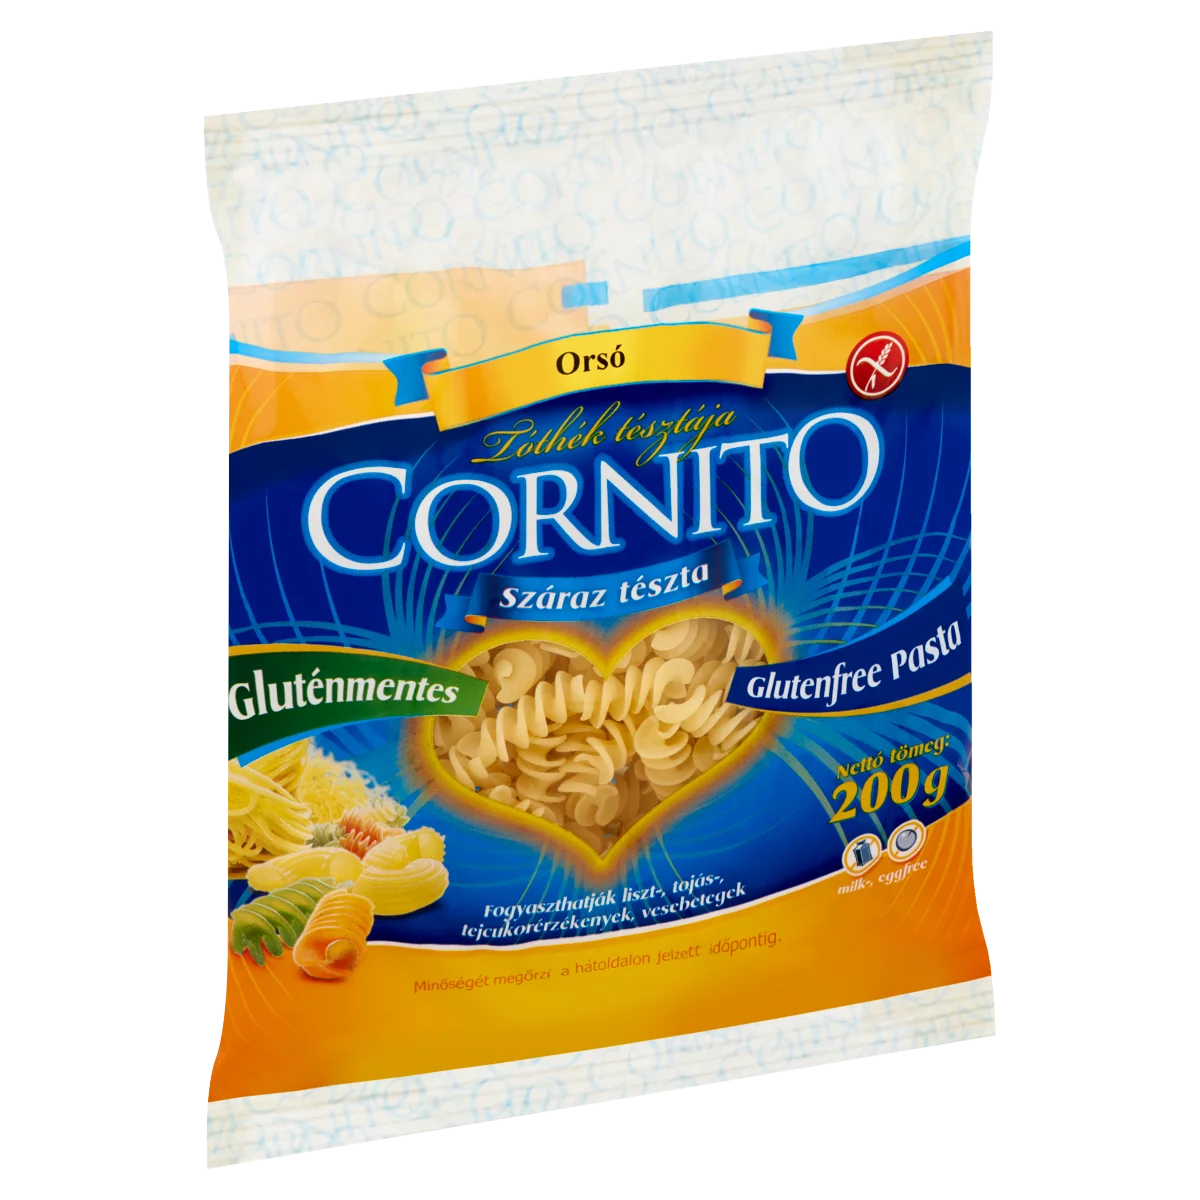 Cornito orsó gluténmentes száraz tészta 200 g